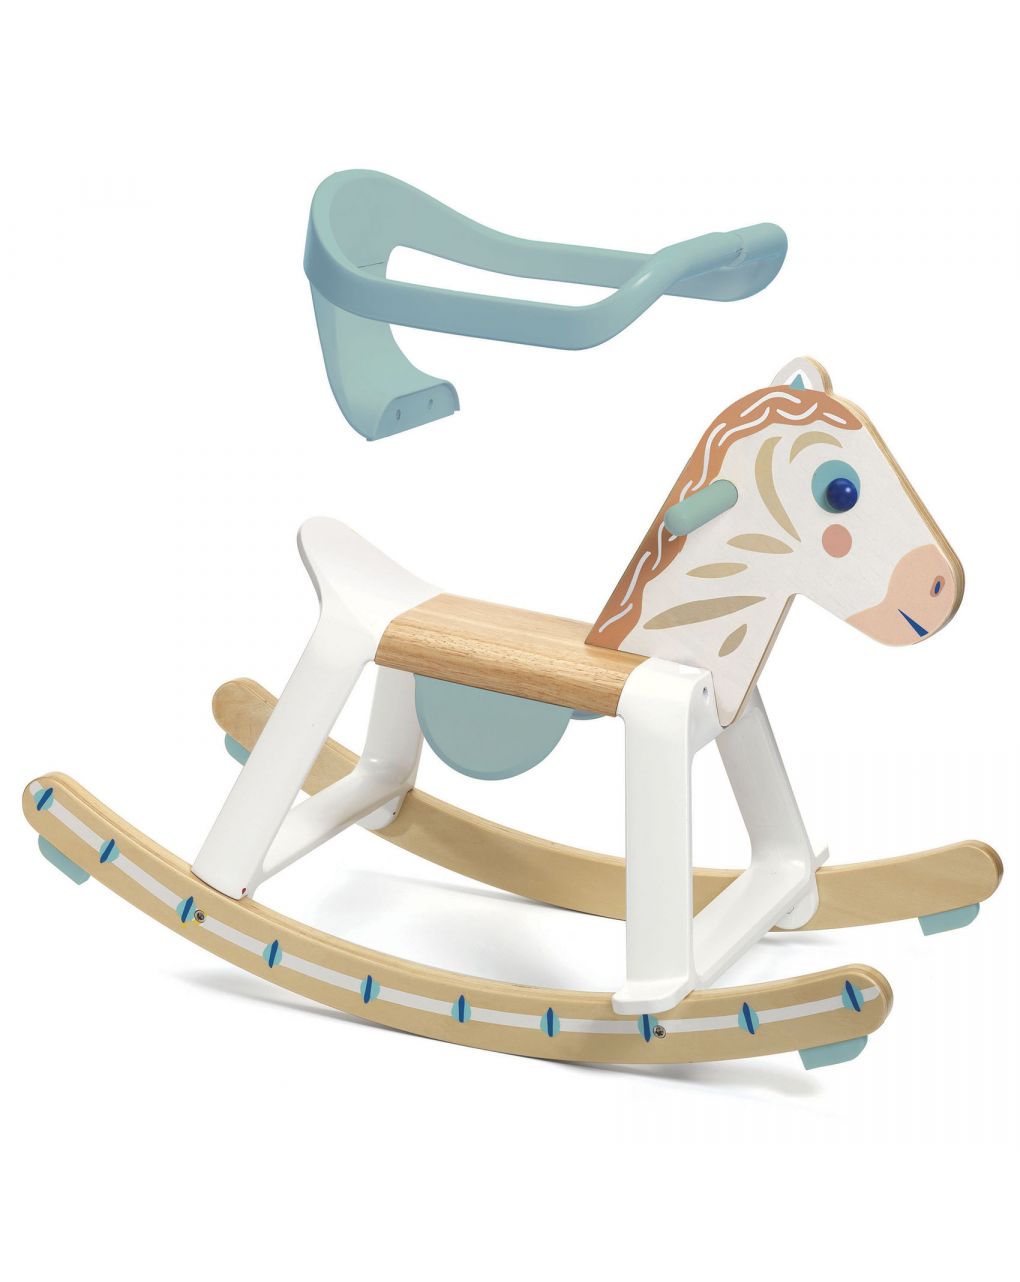 Cavalo de baloiço babyhorses em madeira e plástico - djeco - Djeco